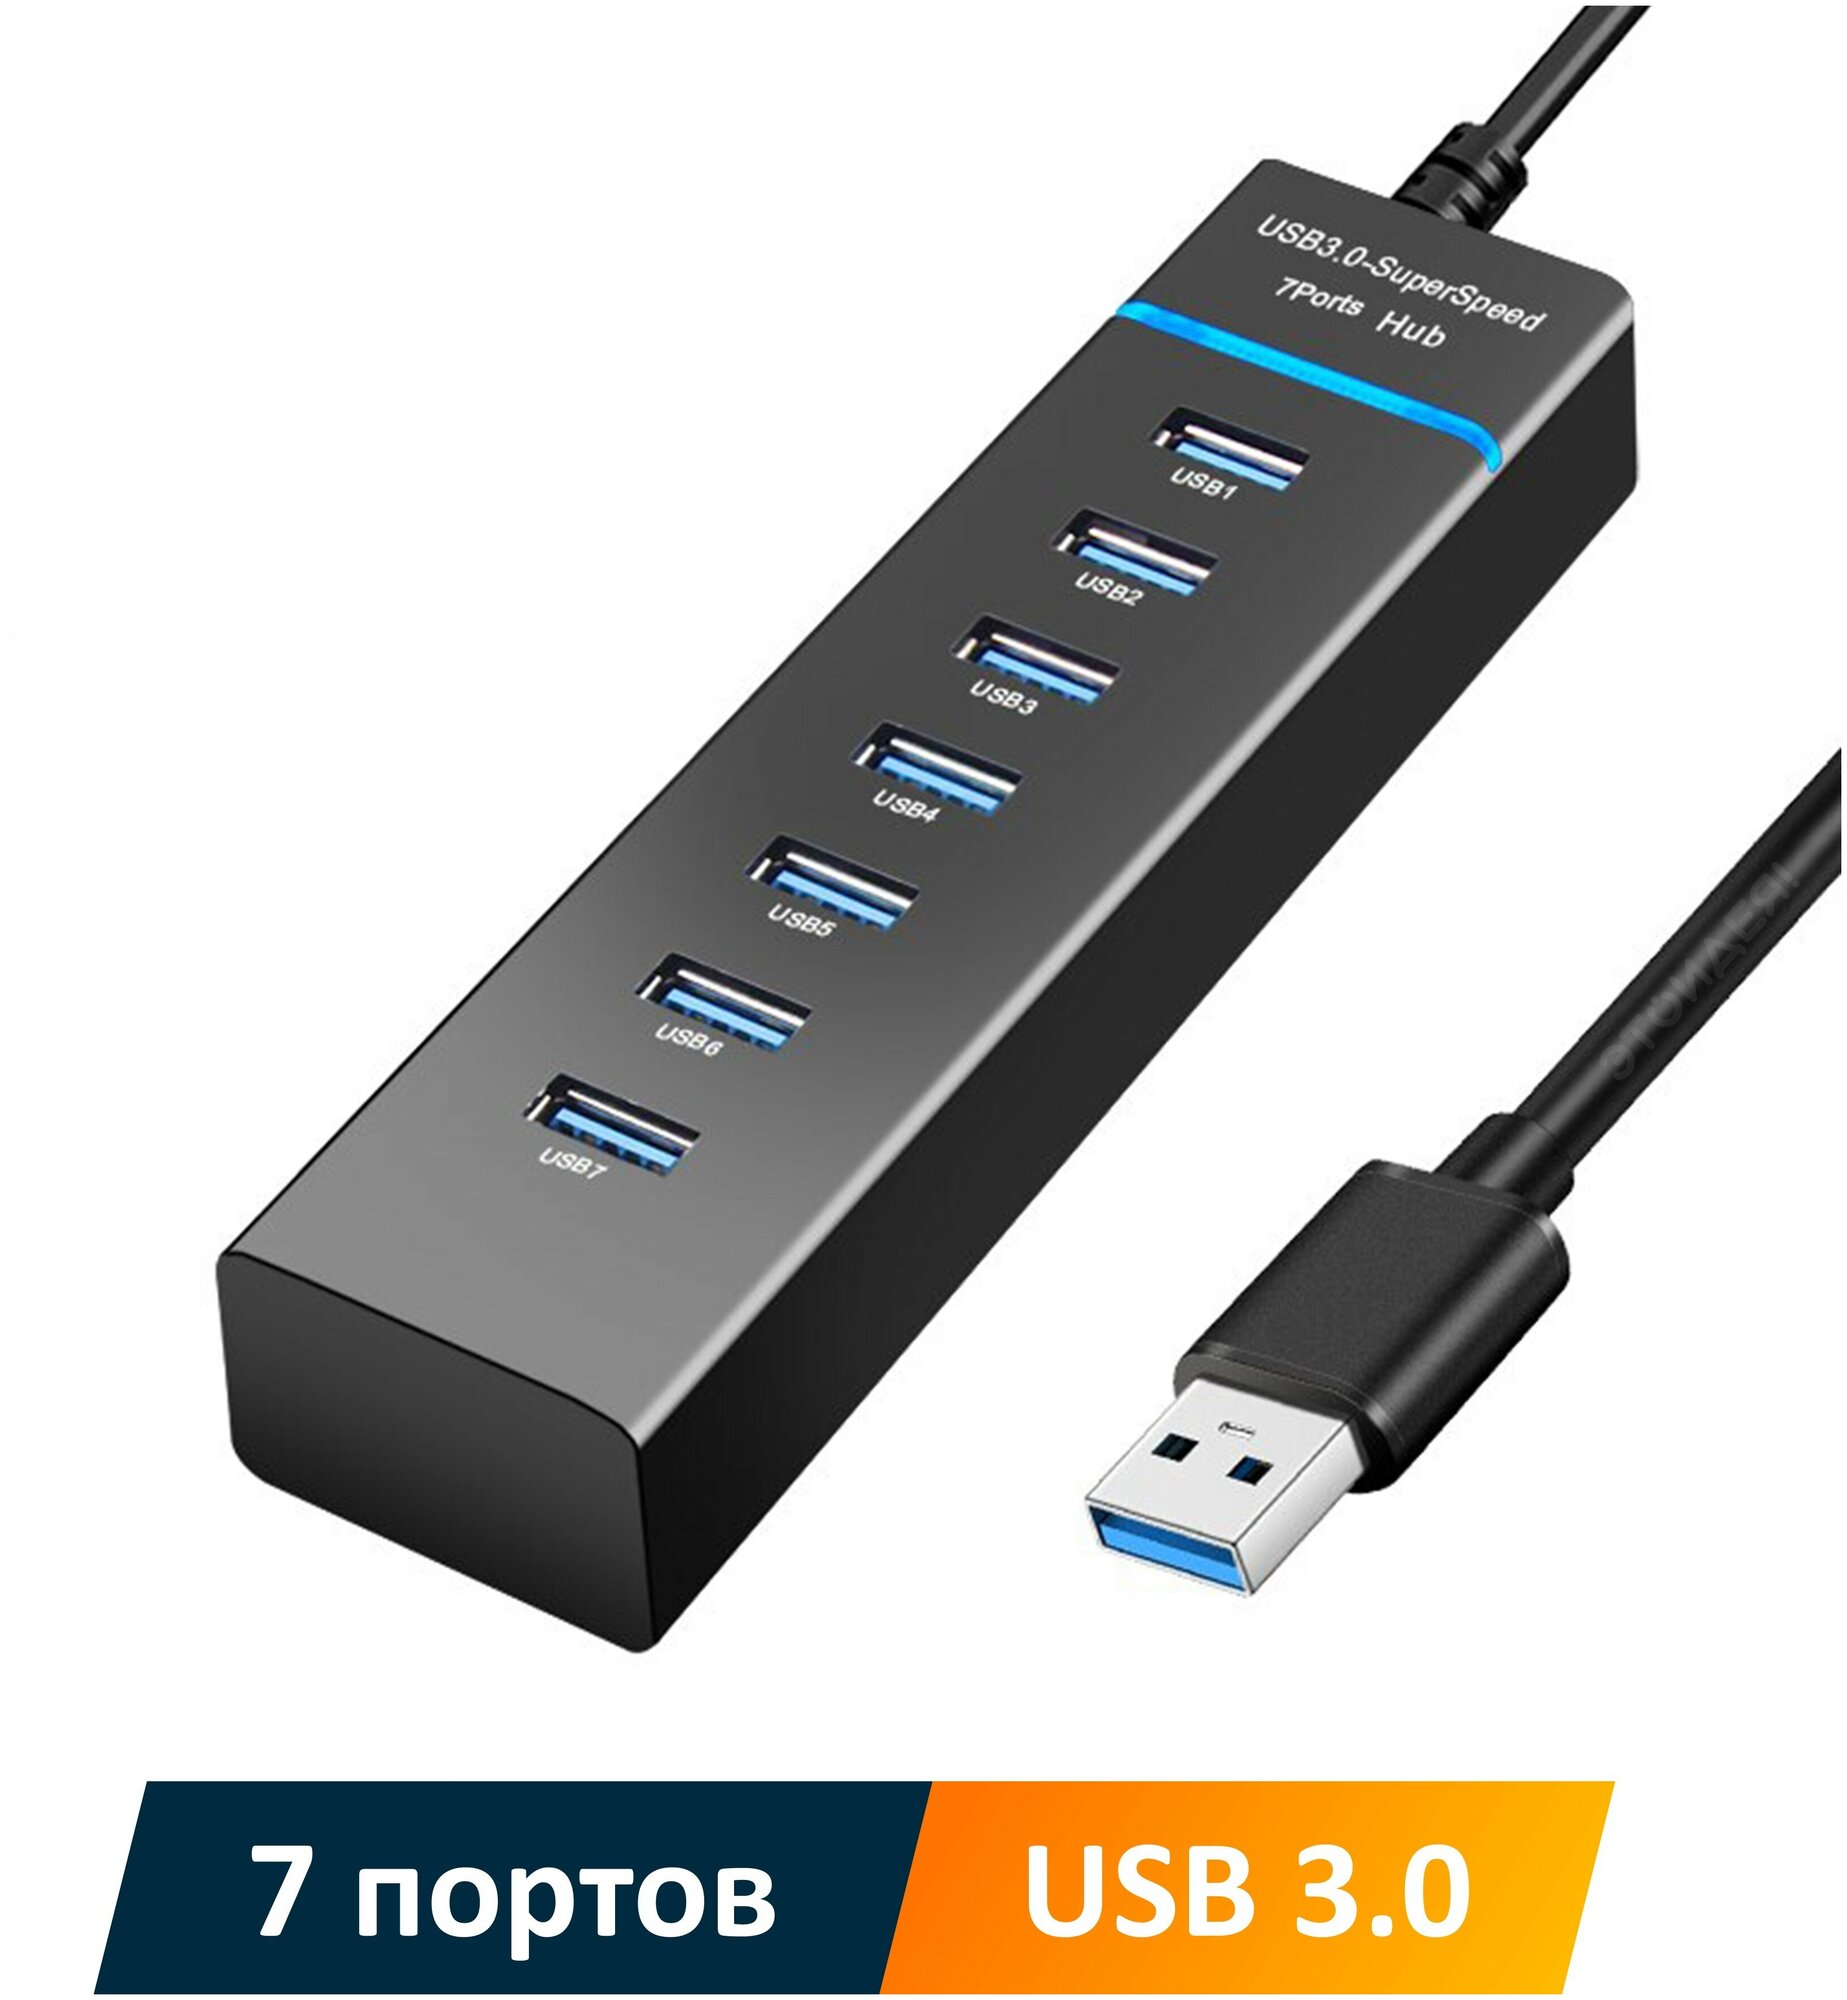 USB хаб NOBUS на 7 портов USB 3.0, скорость 5 Гбит/с, черный пластик, синяя LED подсветка